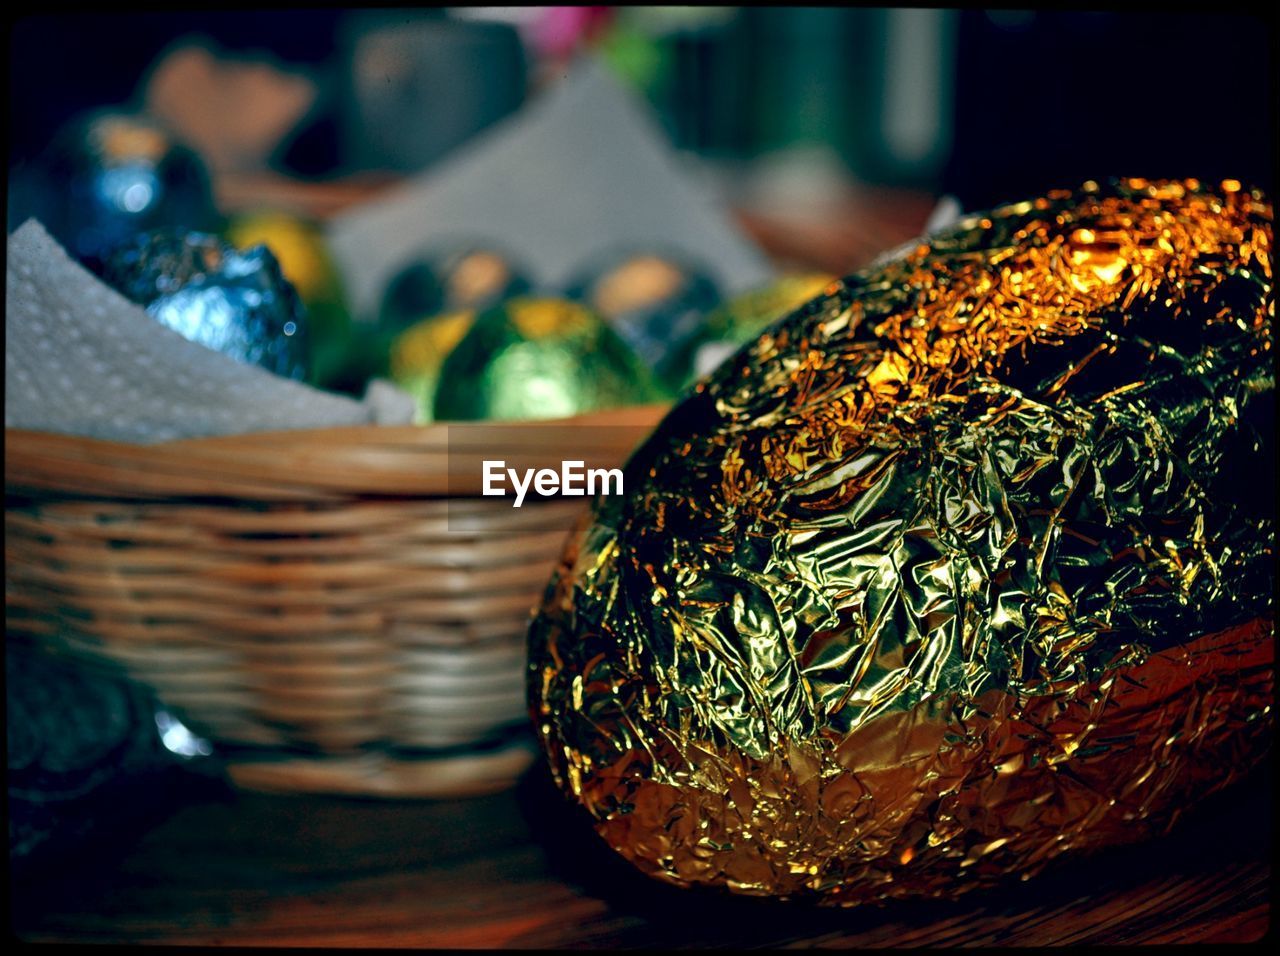 Easter eggs in foil